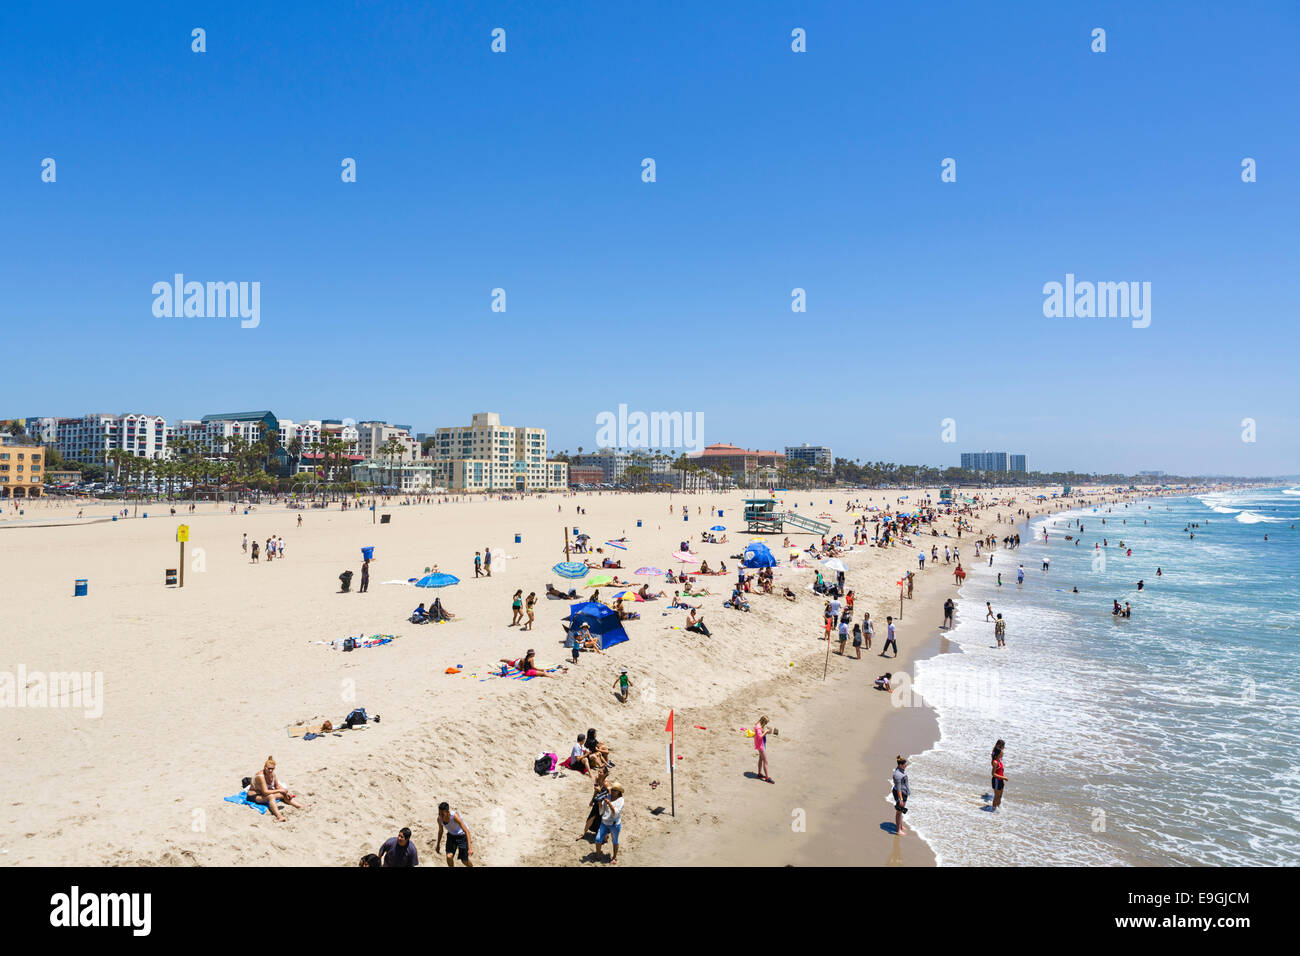 La spiaggia di Santa Monica visto dal molo, Los Angeles, California, Stati Uniti d'America Foto Stock